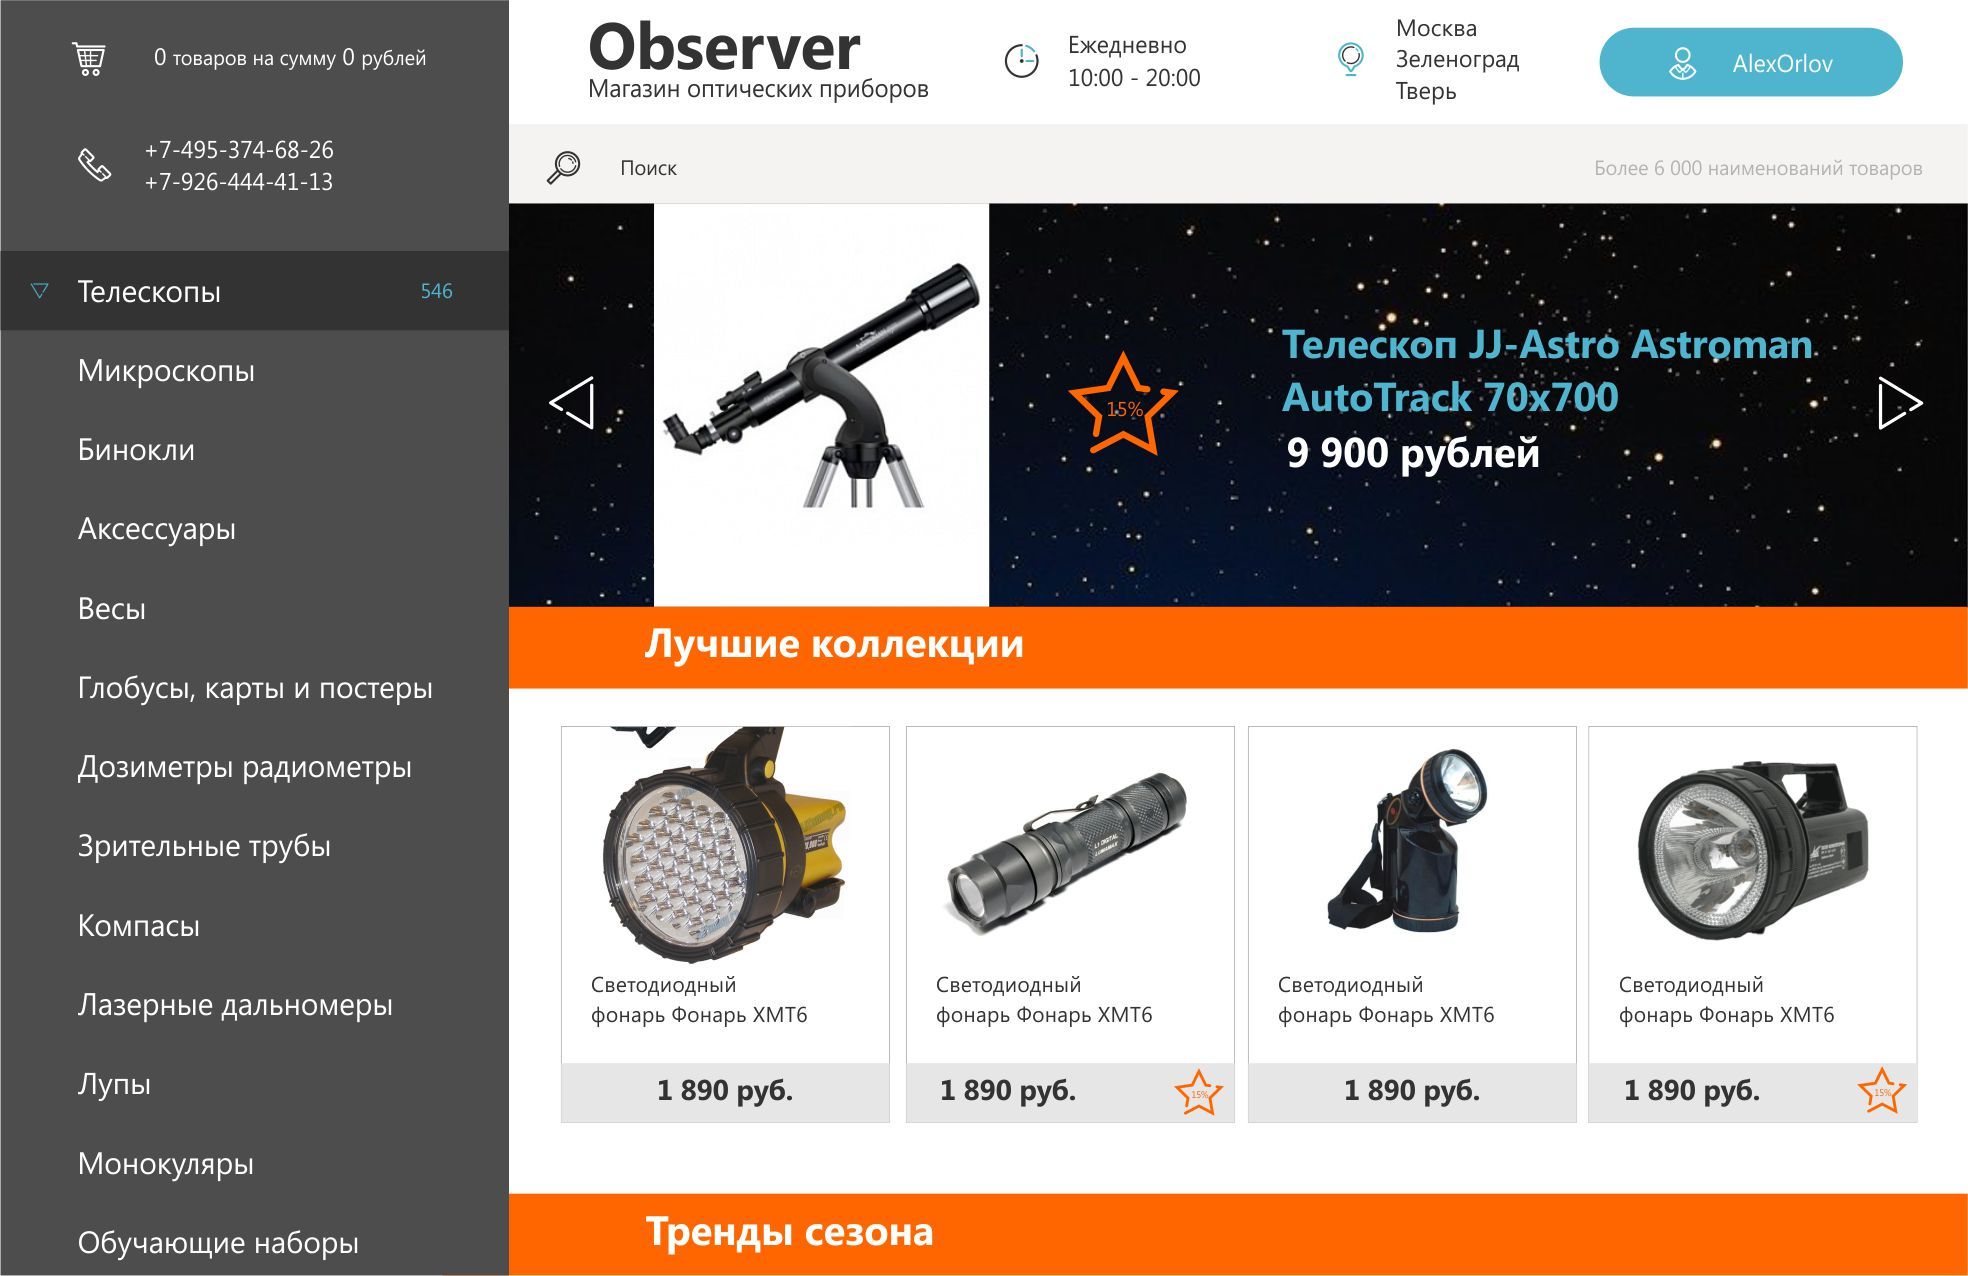 Интерфейс интернет-магазина оптической техники - дизайнер ekbponomarev